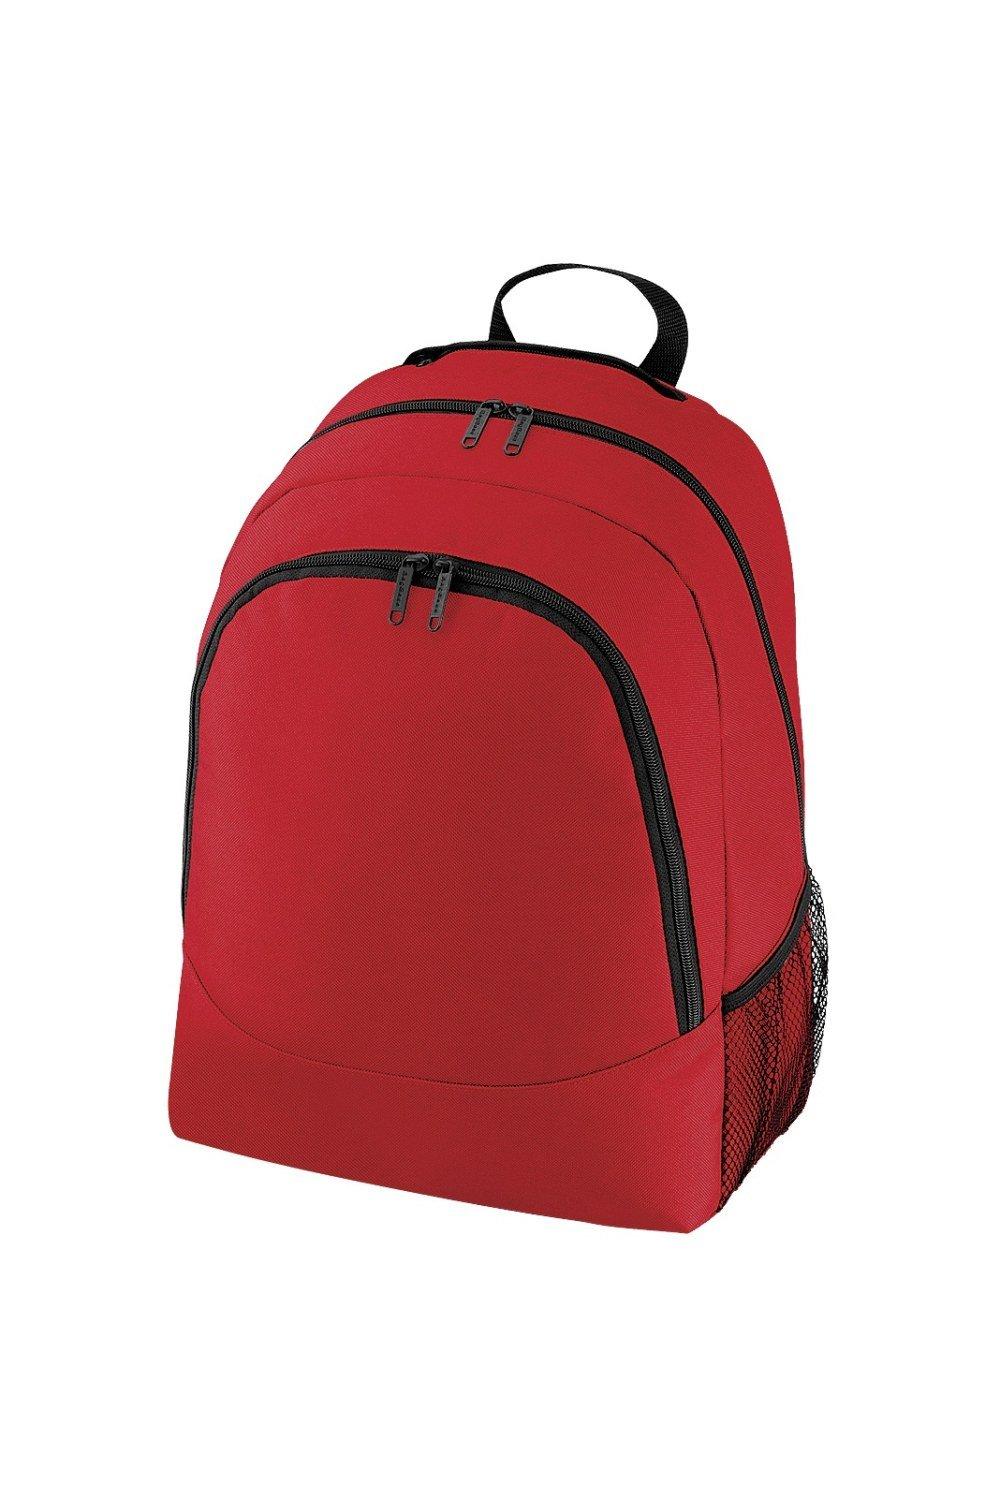 Универсальный многоцелевой рюкзак/рюкзак/сумка (18 литров) (2 шт. в упаковке) Bagbase, красный чехол задняя панель накладка бампер mypads mp3 для huawei honor 6 plus pe ul00 tl20 tl10 cl00 75 7 противоударный